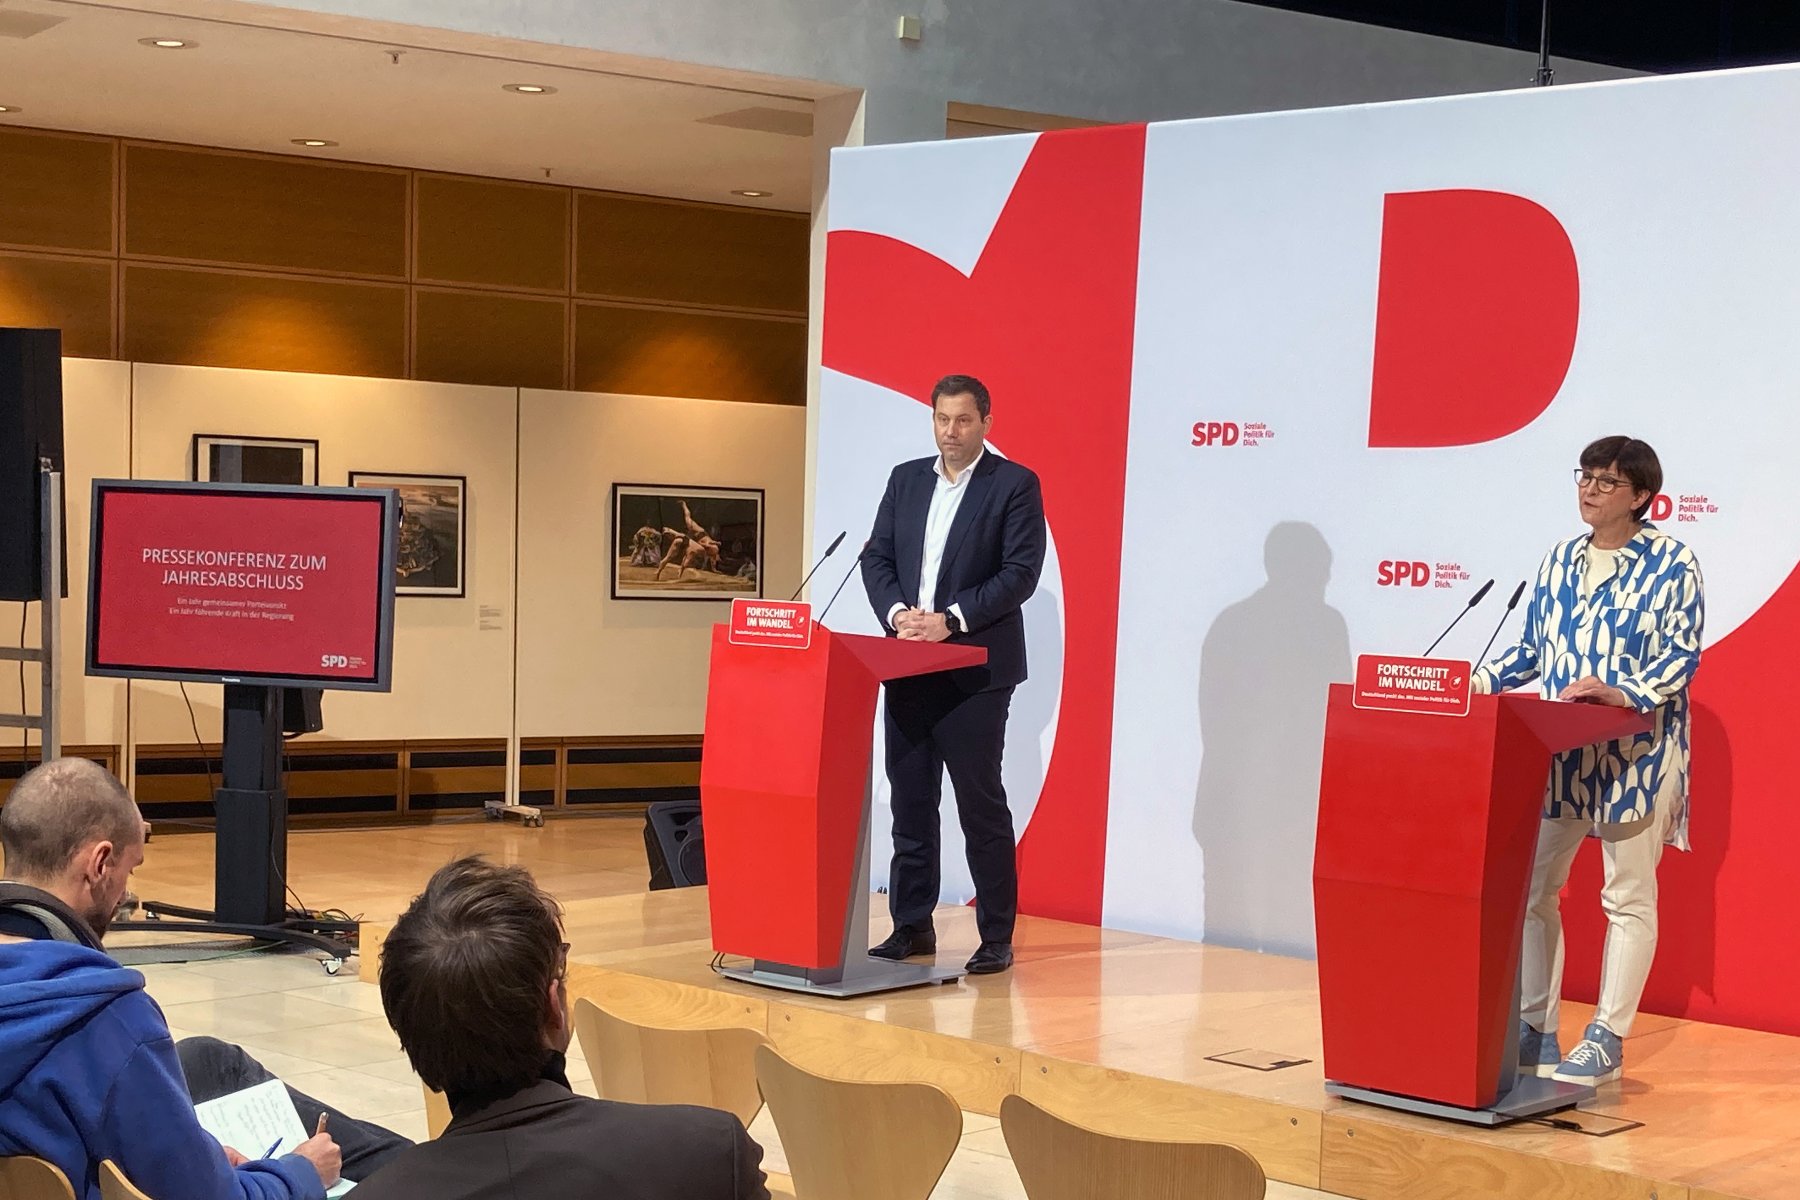 Die SPD über den Tellerrand hinaus positionieren: SPD-Vorsitzende Saskia Esken und Lars Klingbeil